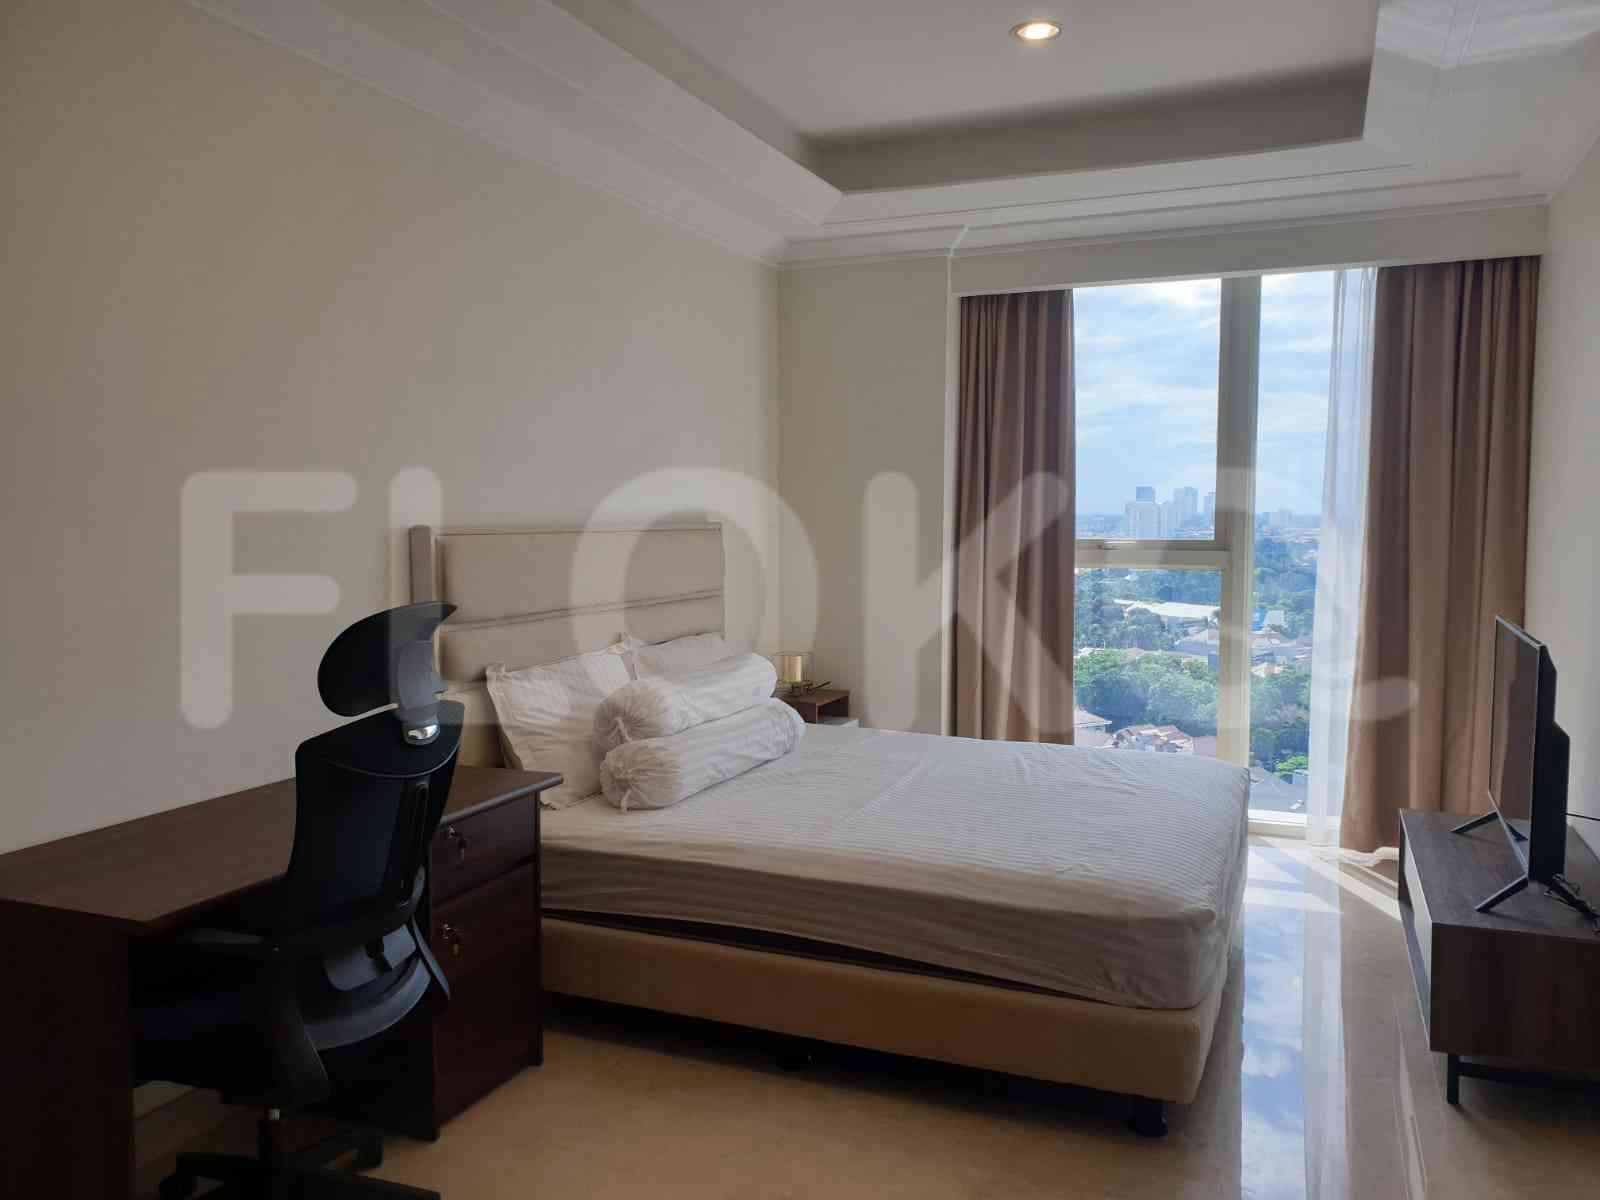 Tipe 3 Kamar Tidur di Lantai 15 untuk disewakan di Pondok Indah Residence - fpo5d4 5